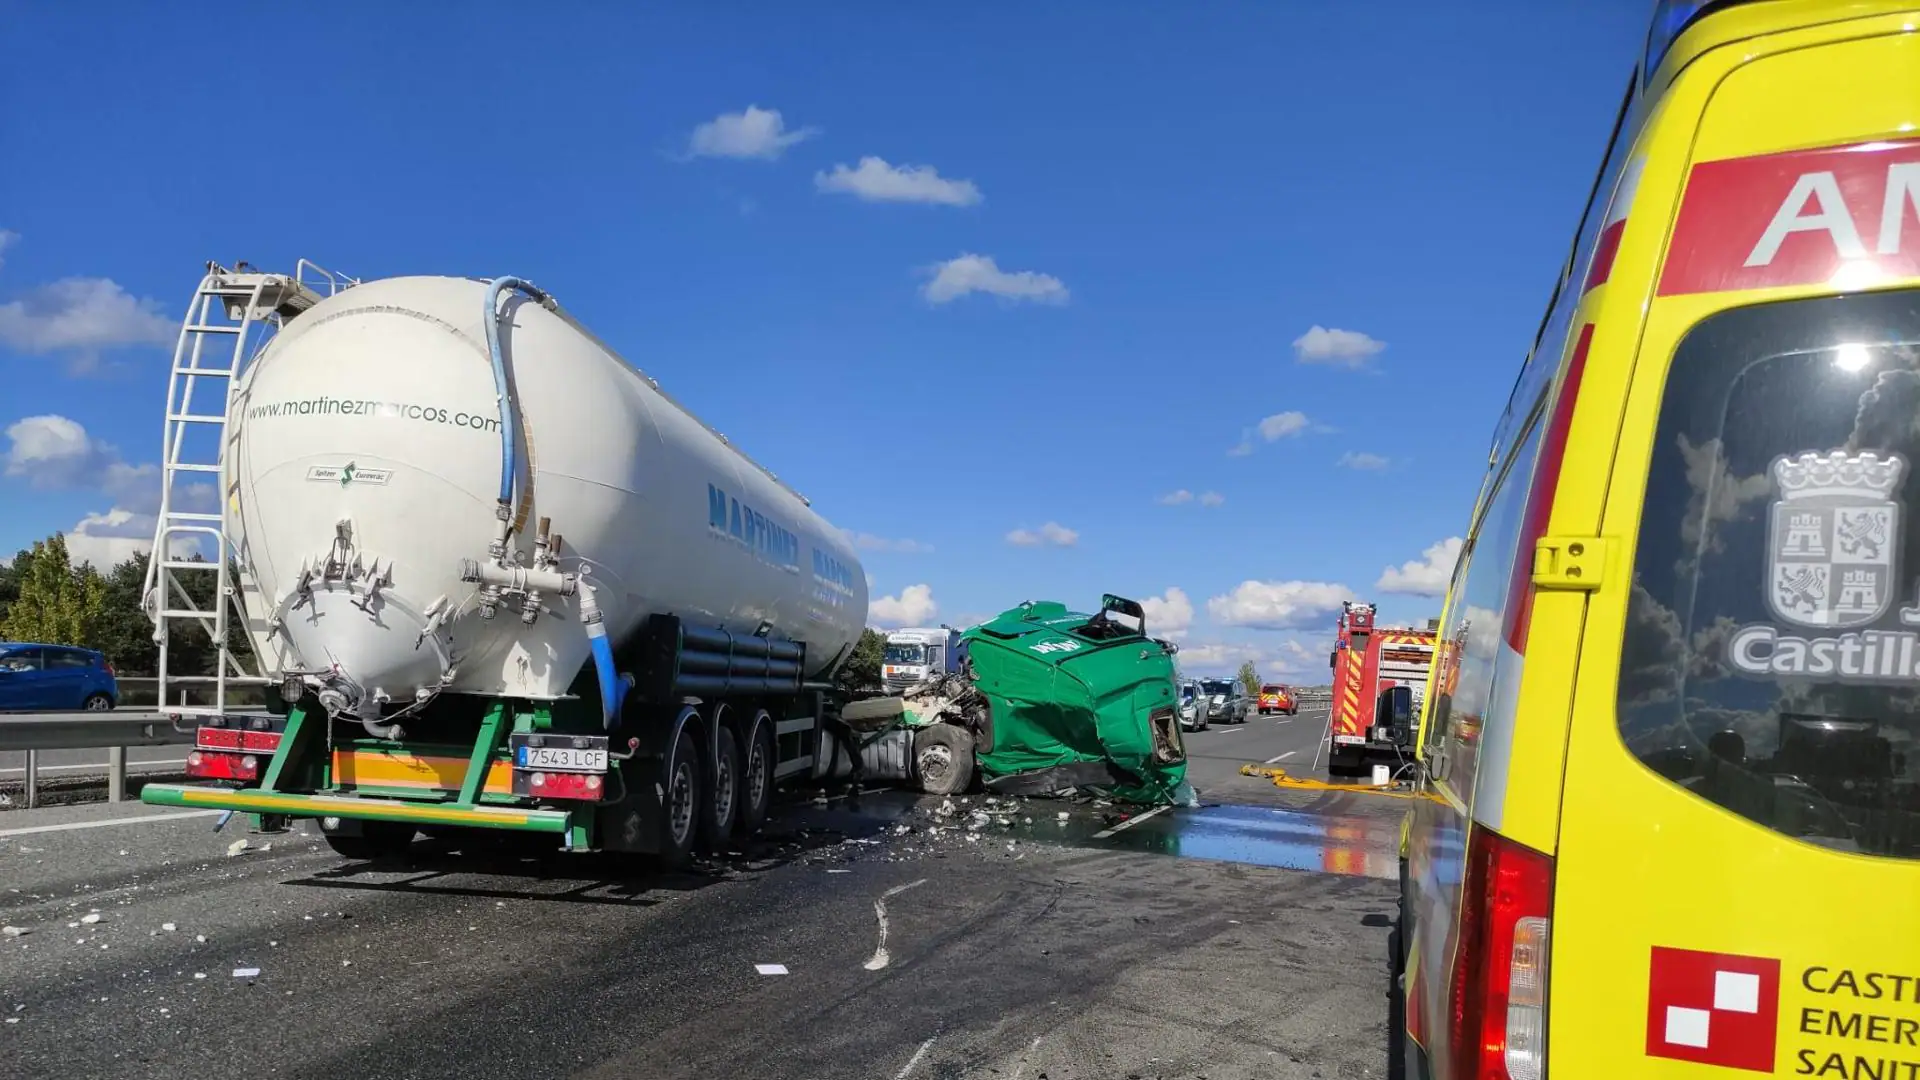 Impactante choque entre camiones en la A-1: las imágenes revelan el caos tras el accidente